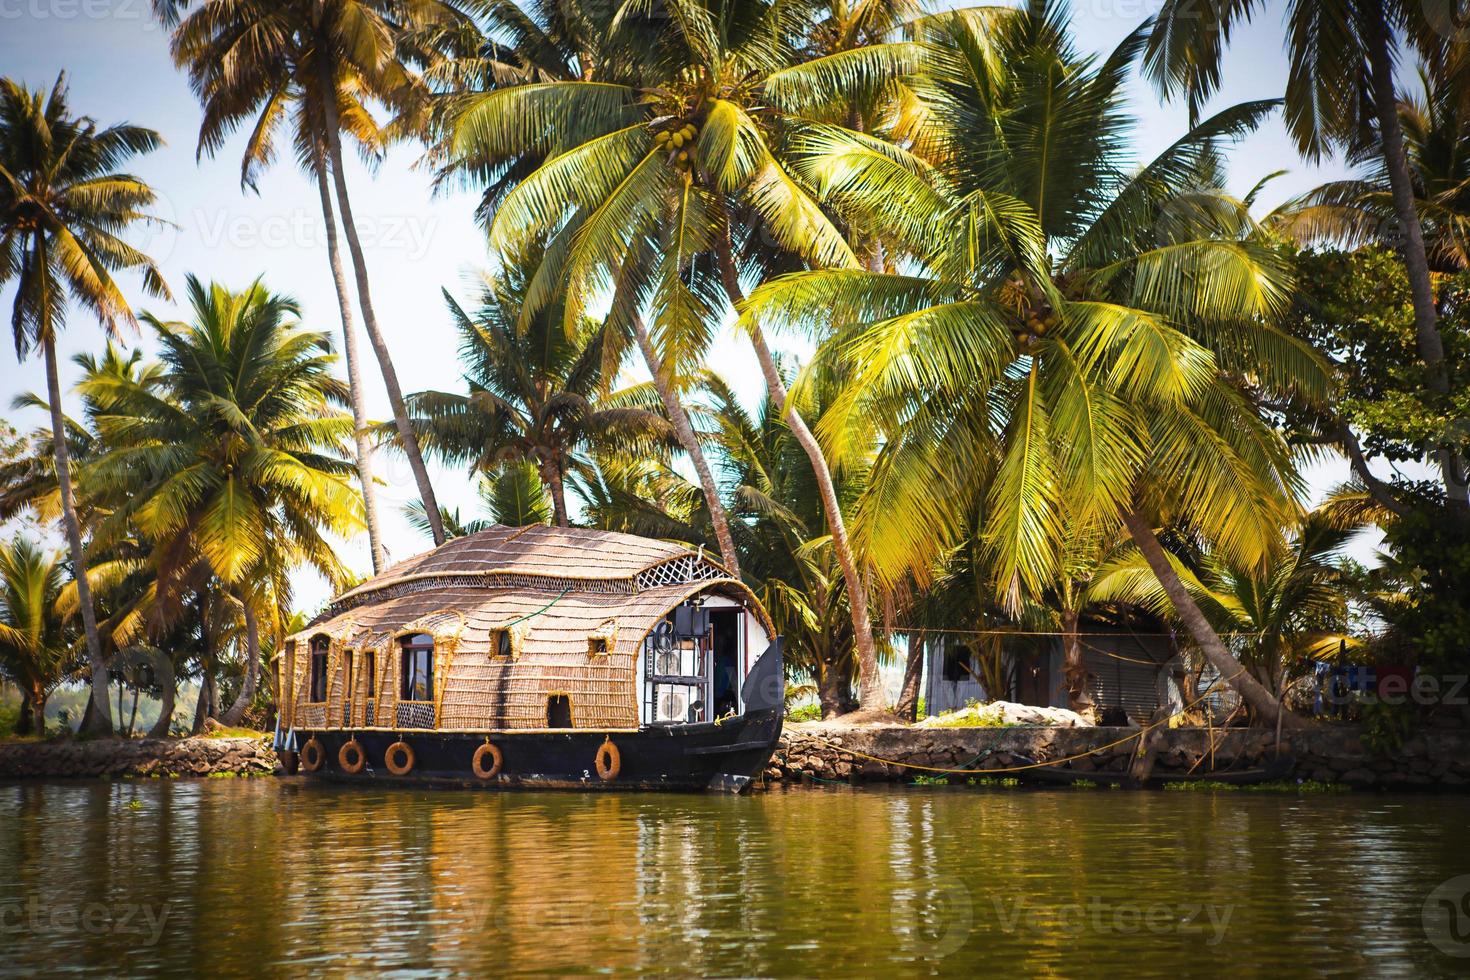 nave da crociera di piacere house-boat in india, kerala sui canali fluviali ricoperti di alghe di allapuzha in india. barca sul lago sotto il sole splendente e le palme tra i tropici. vista casa galleggiante foto